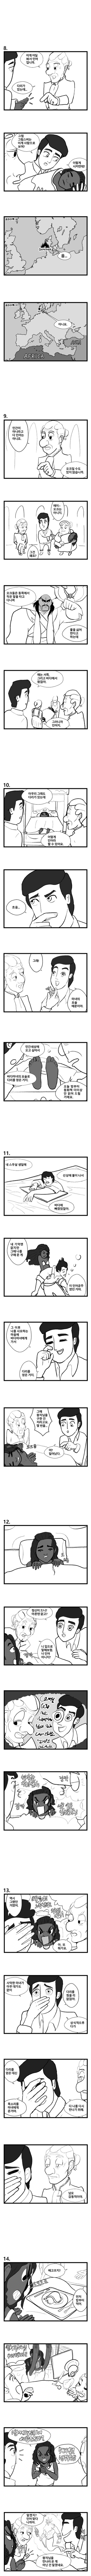 인어공주 실사 리메이크 manhwa(약스포)